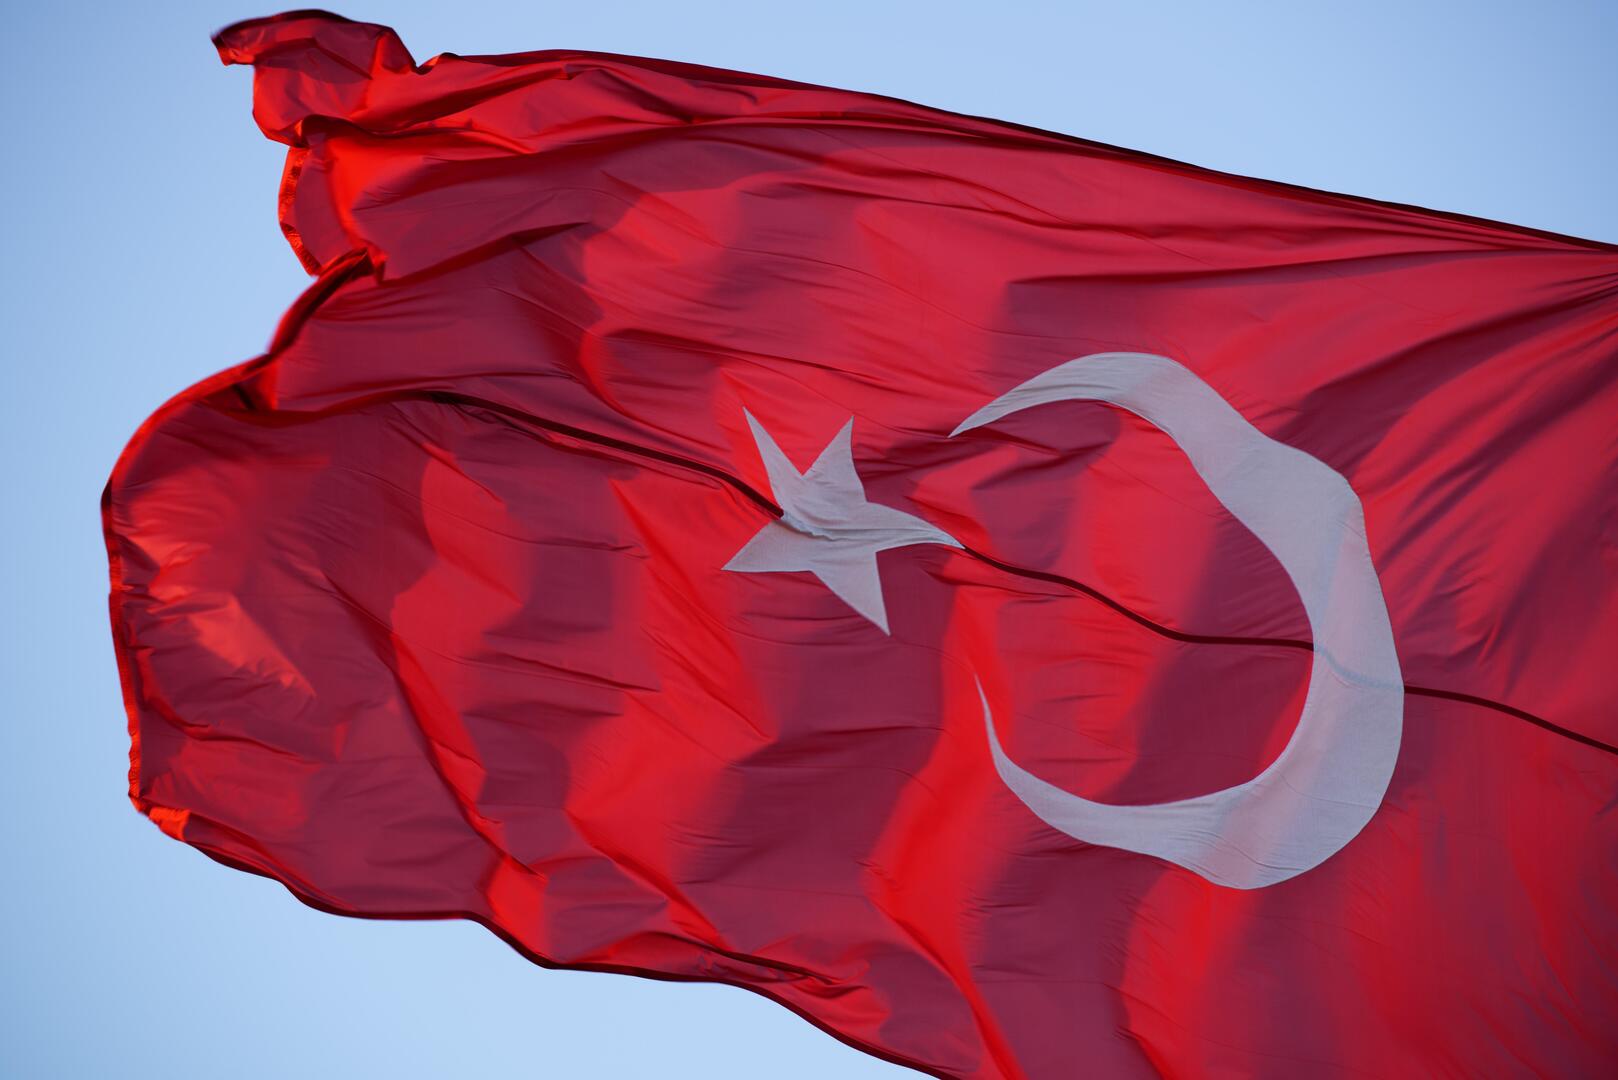 الاستخبارات التركية تعلن تدمير مواقع لـ